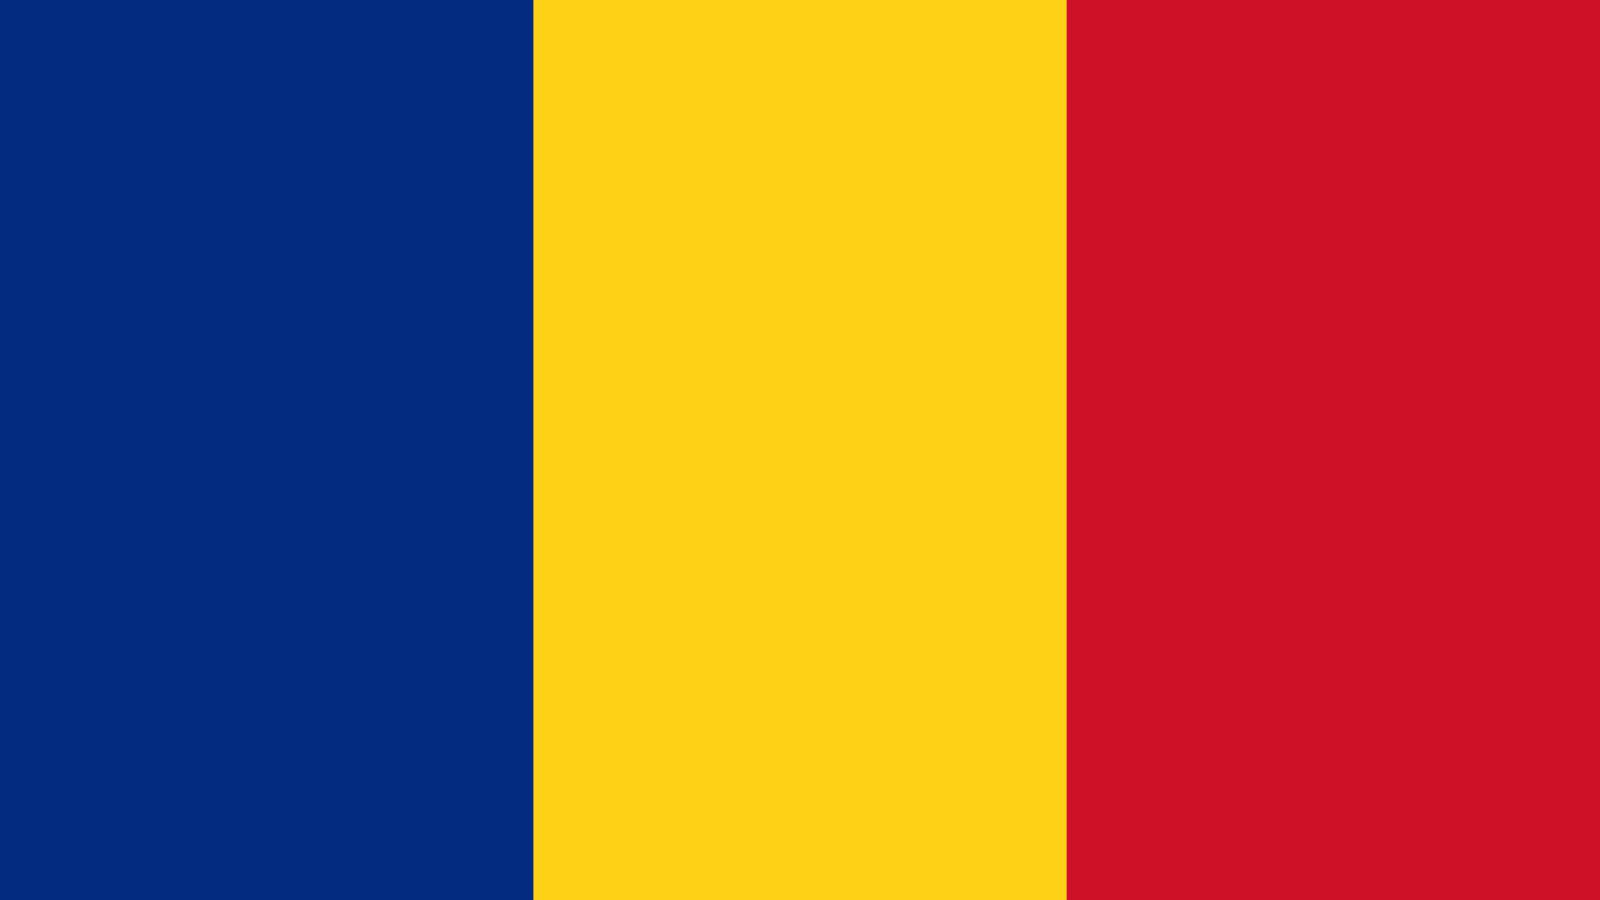 Lo annuncia il governo rumeno